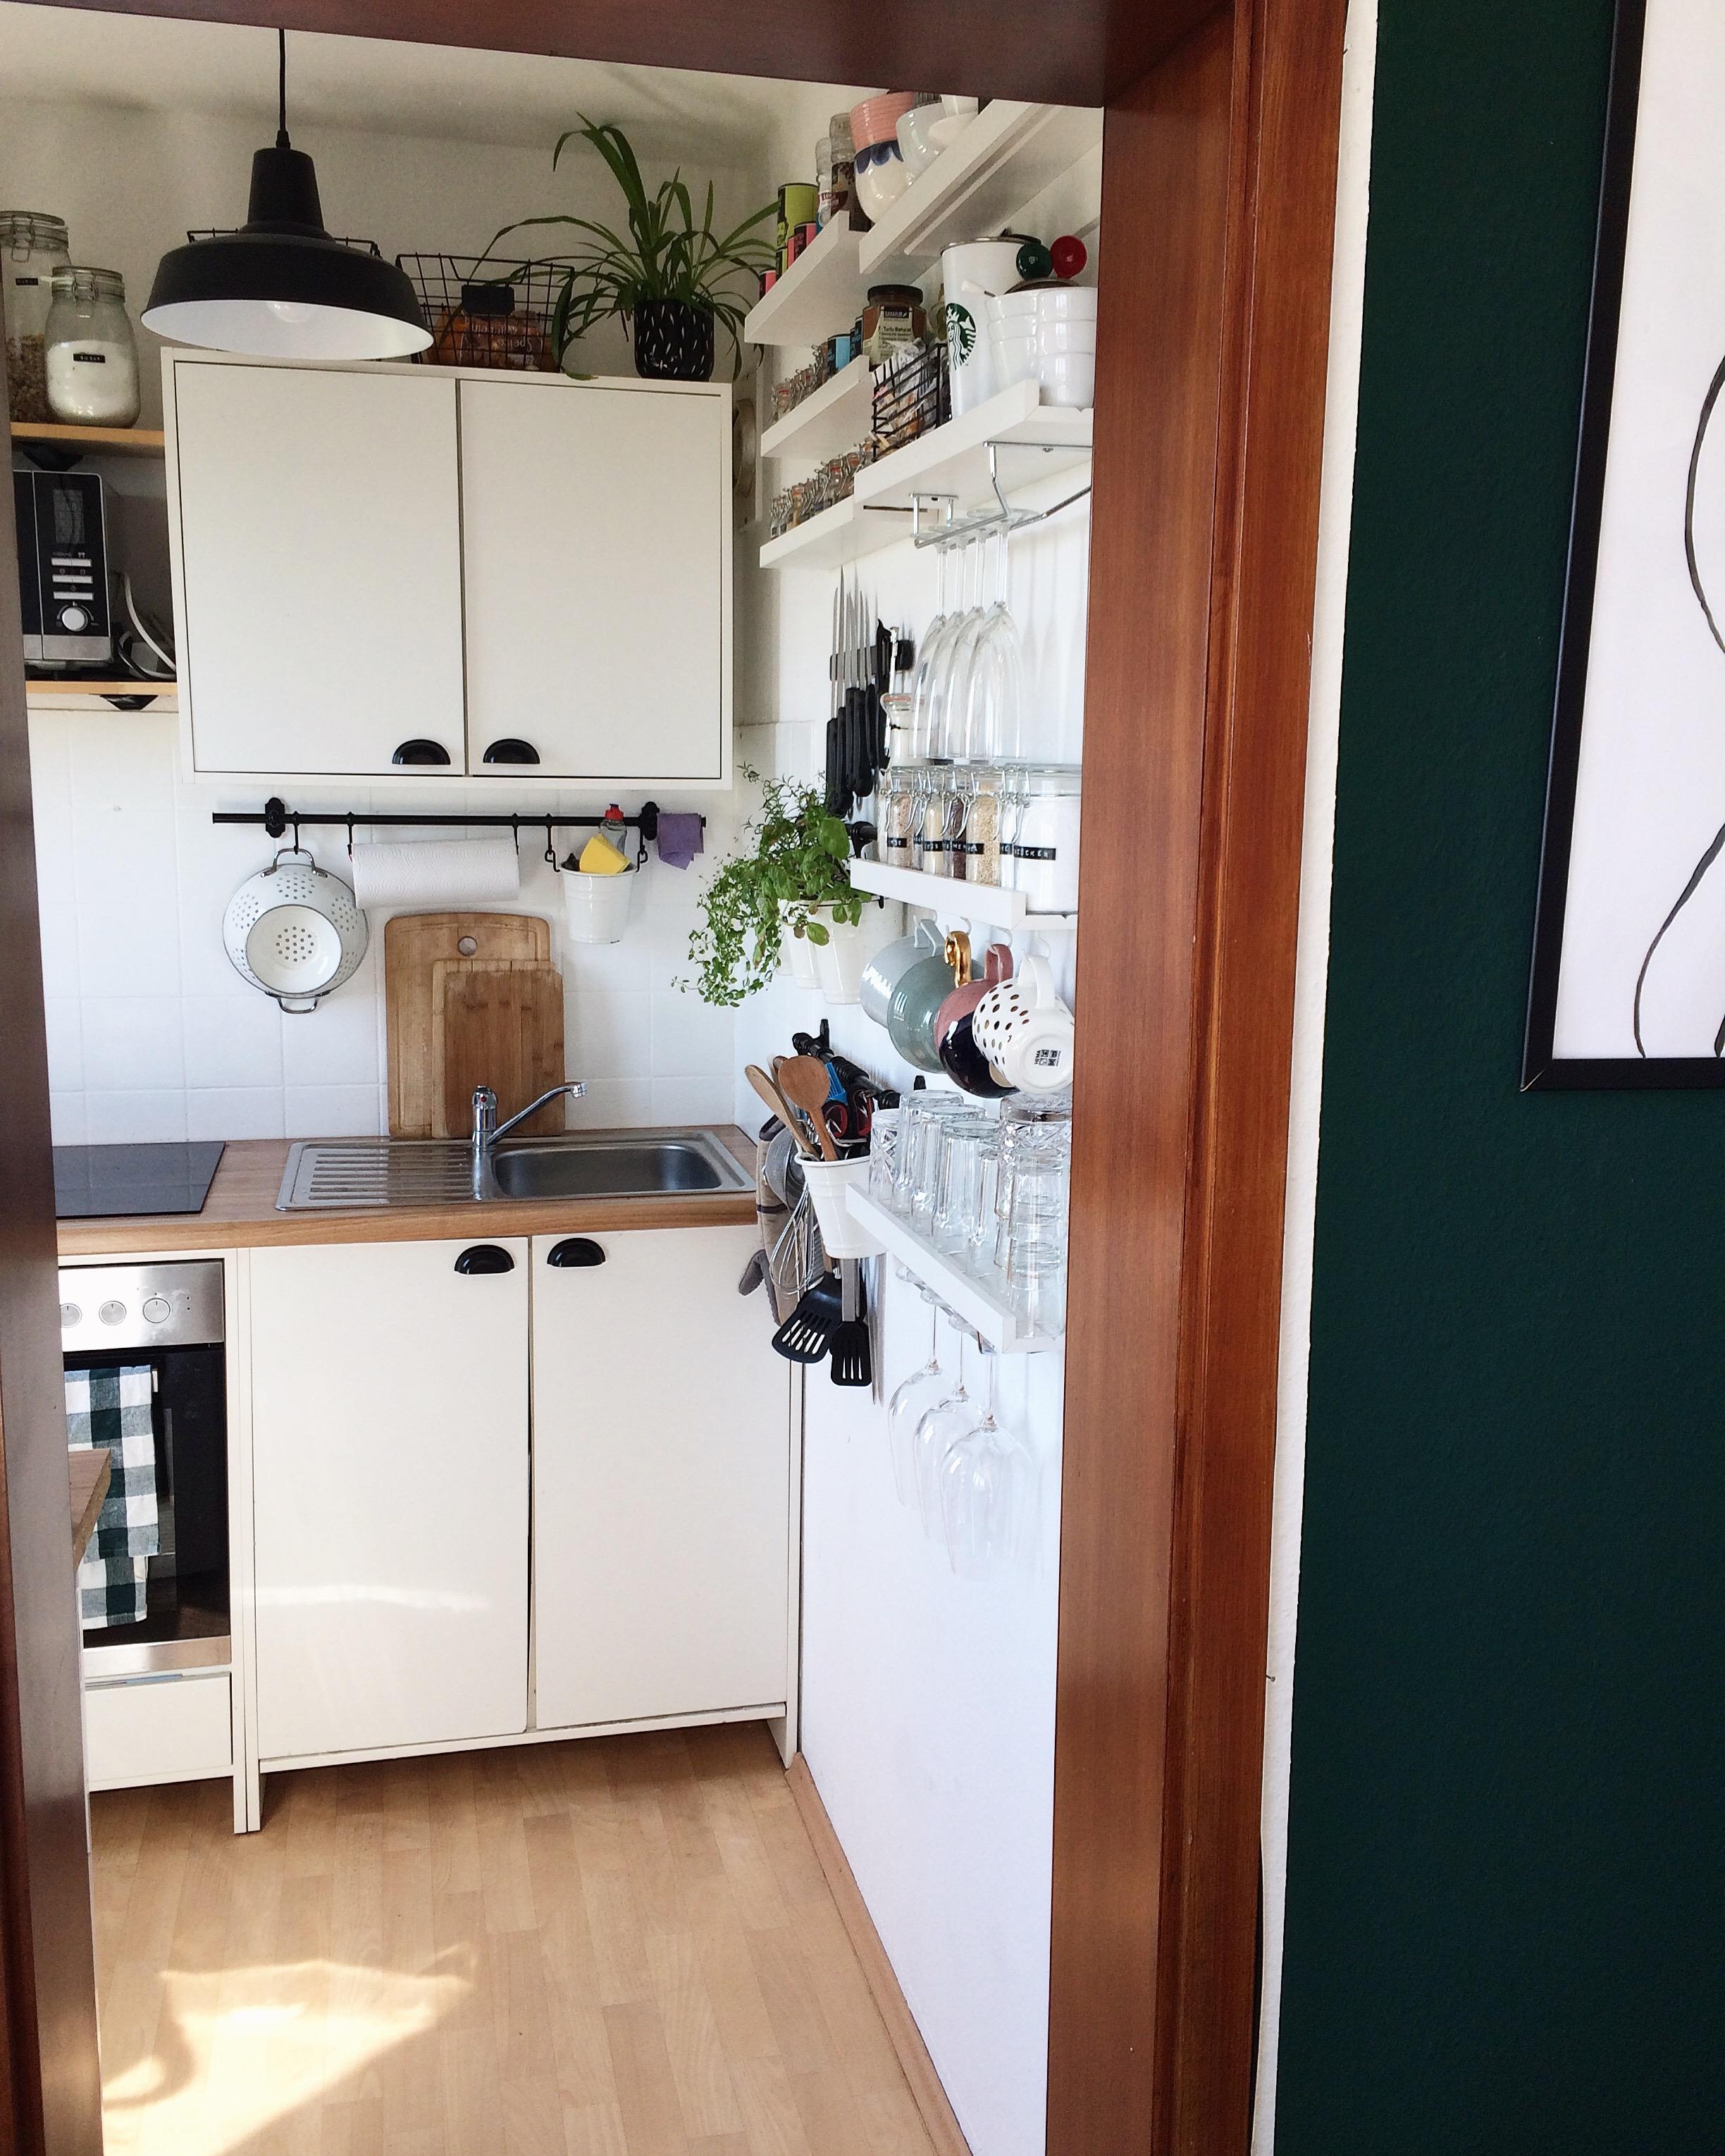 Eine Küche geht auch auf wenigen qm. #küche #kleineküche #kitchen #whitekitchen